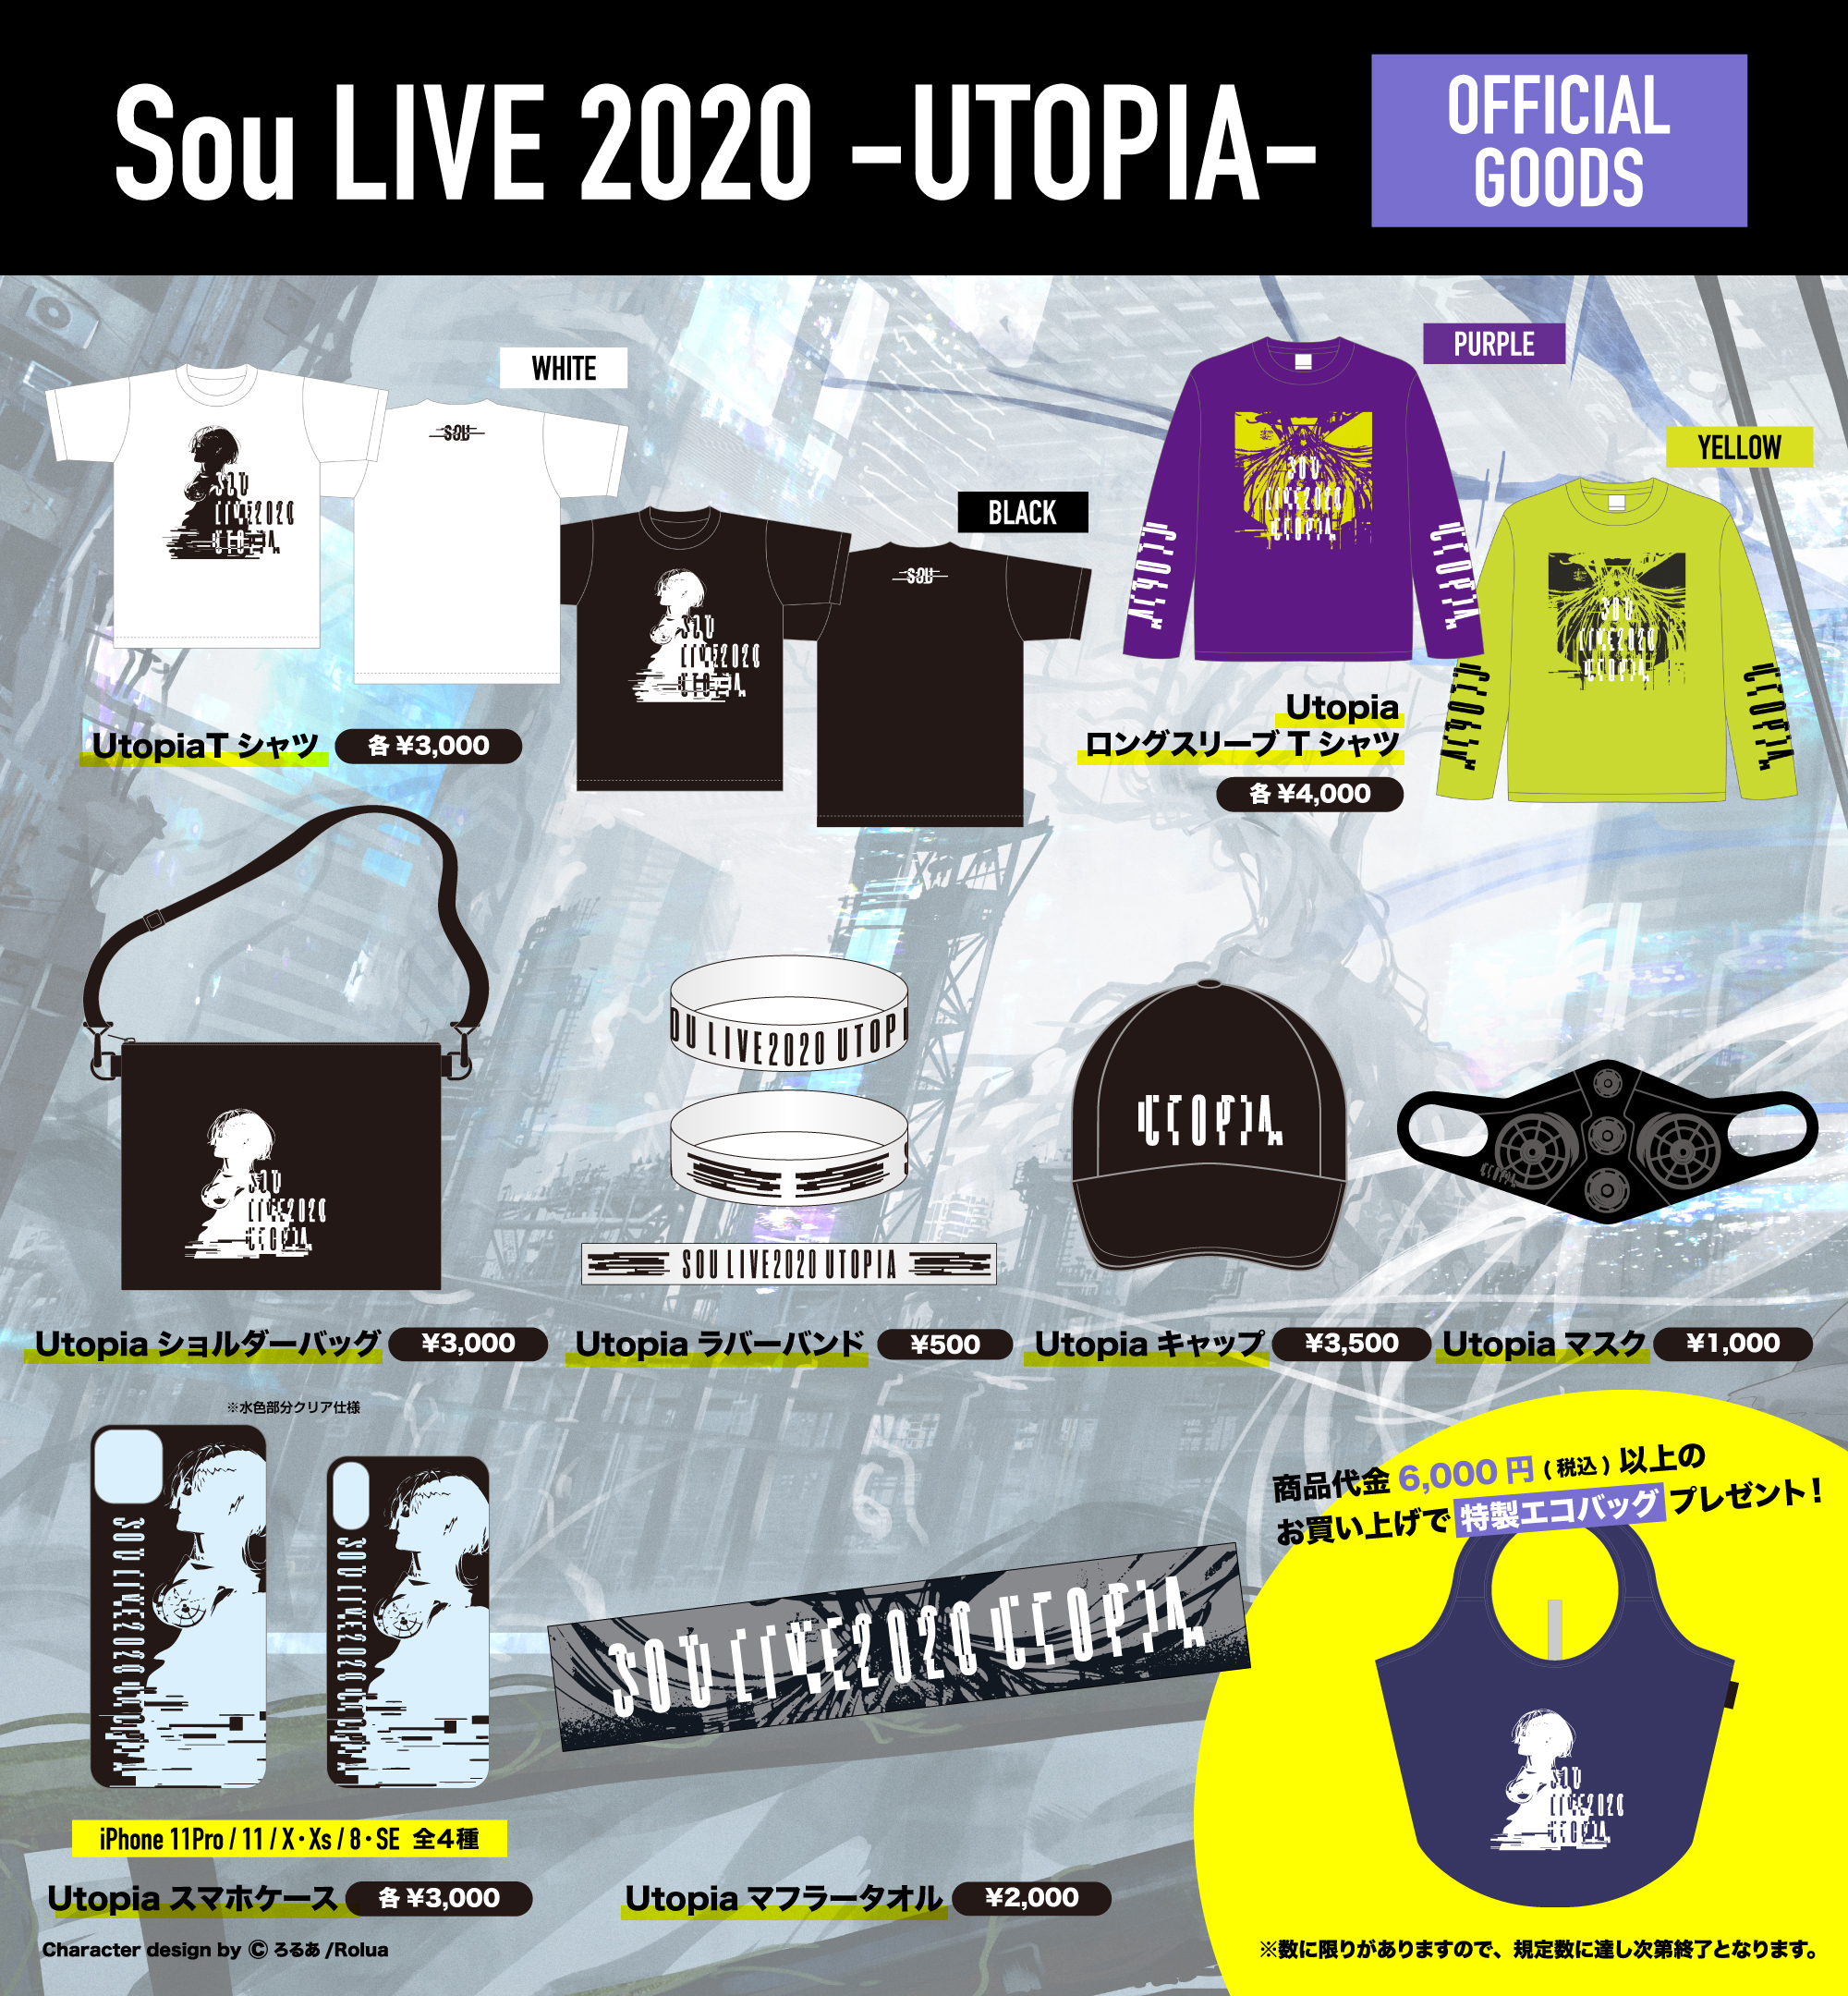 GOODS】Sou LIVE 2020 -UTOPIA- オフィシャルグッズ | NEWS | Sou